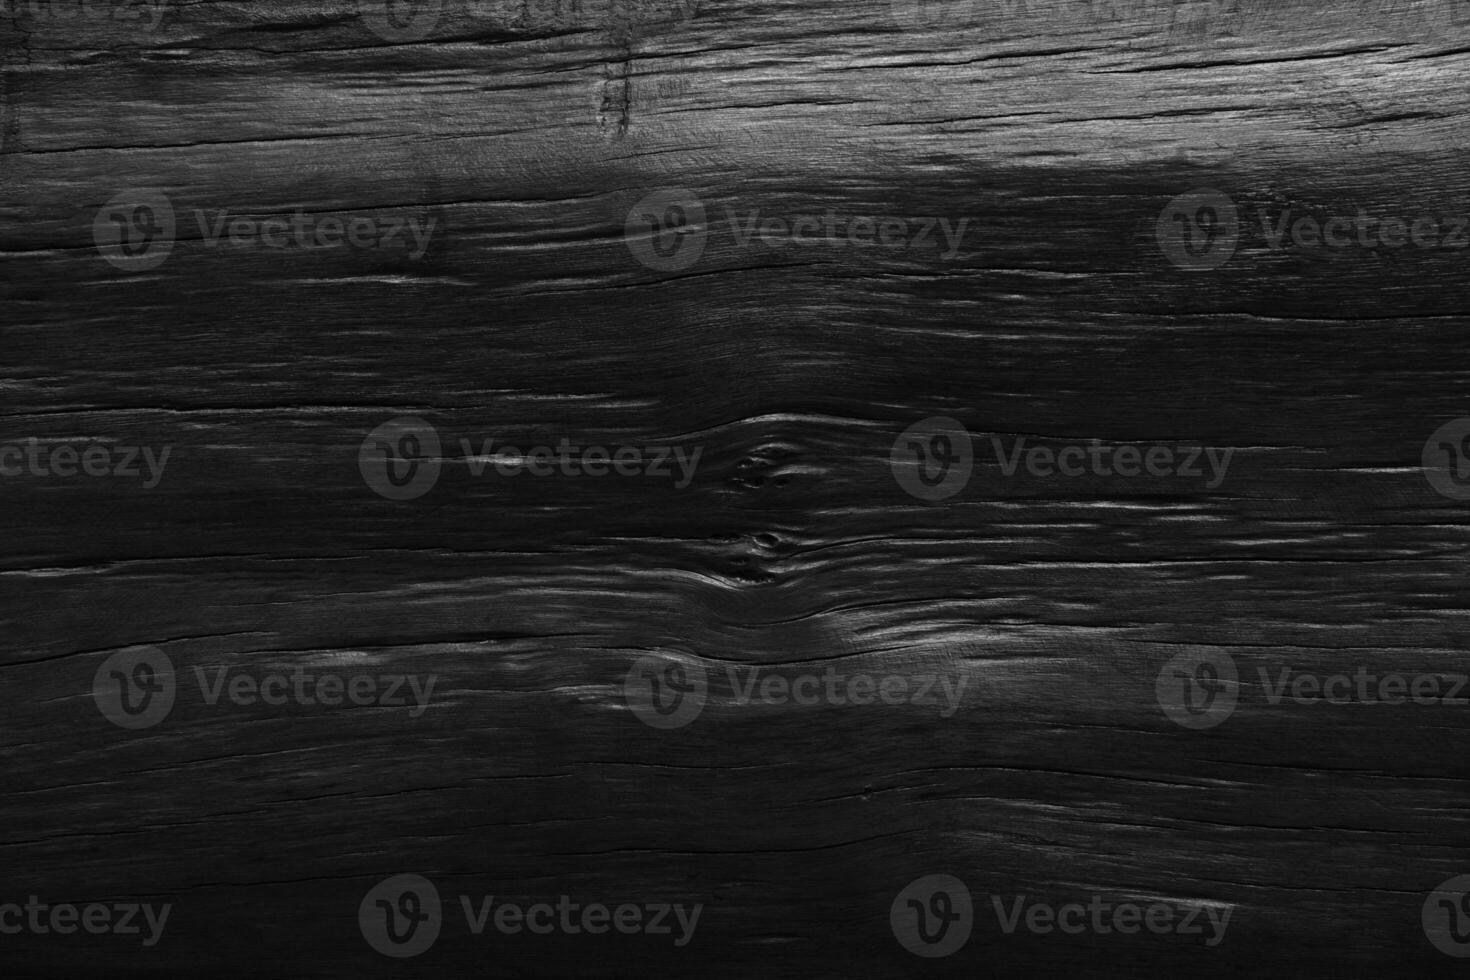 trä svart bakgrund. mörk trä- yta, topp av tabell, golv, vägg eller tapet tom för design foto